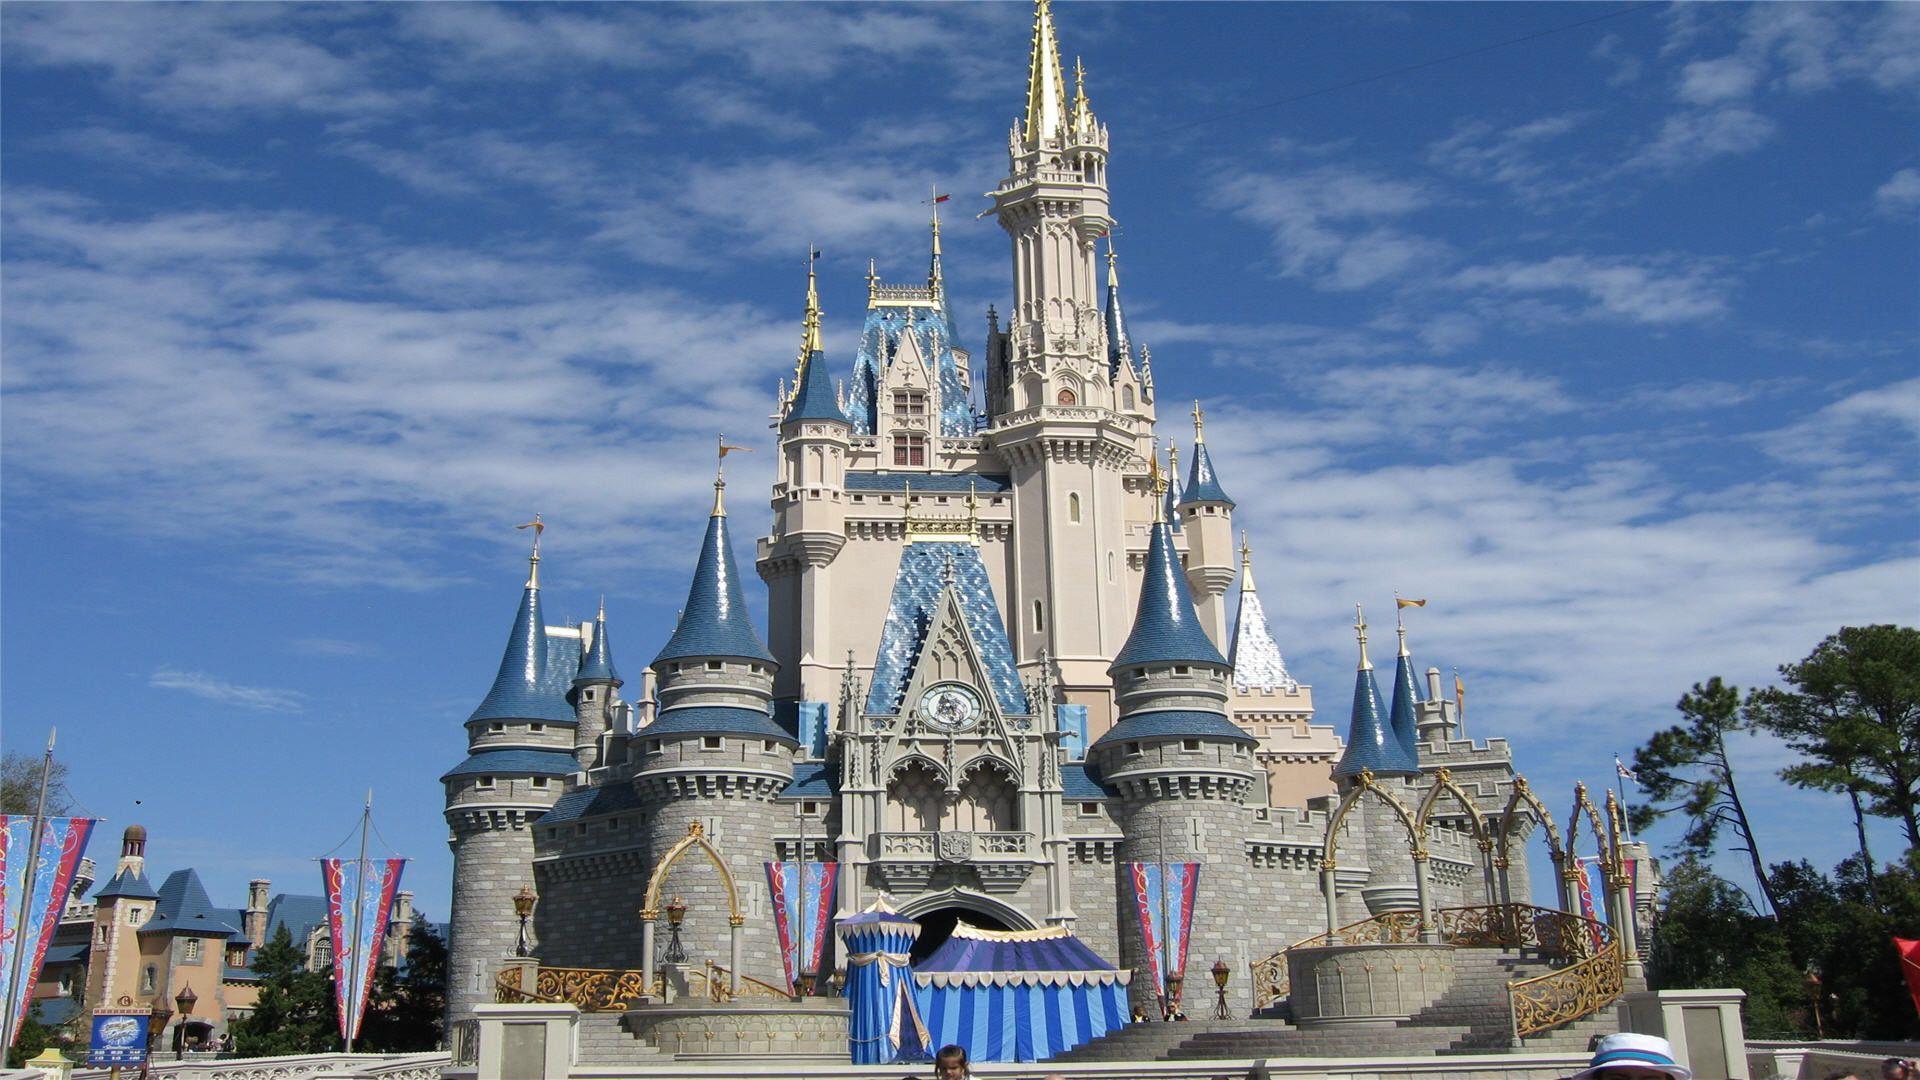 Disney Castle Wallpaper HD